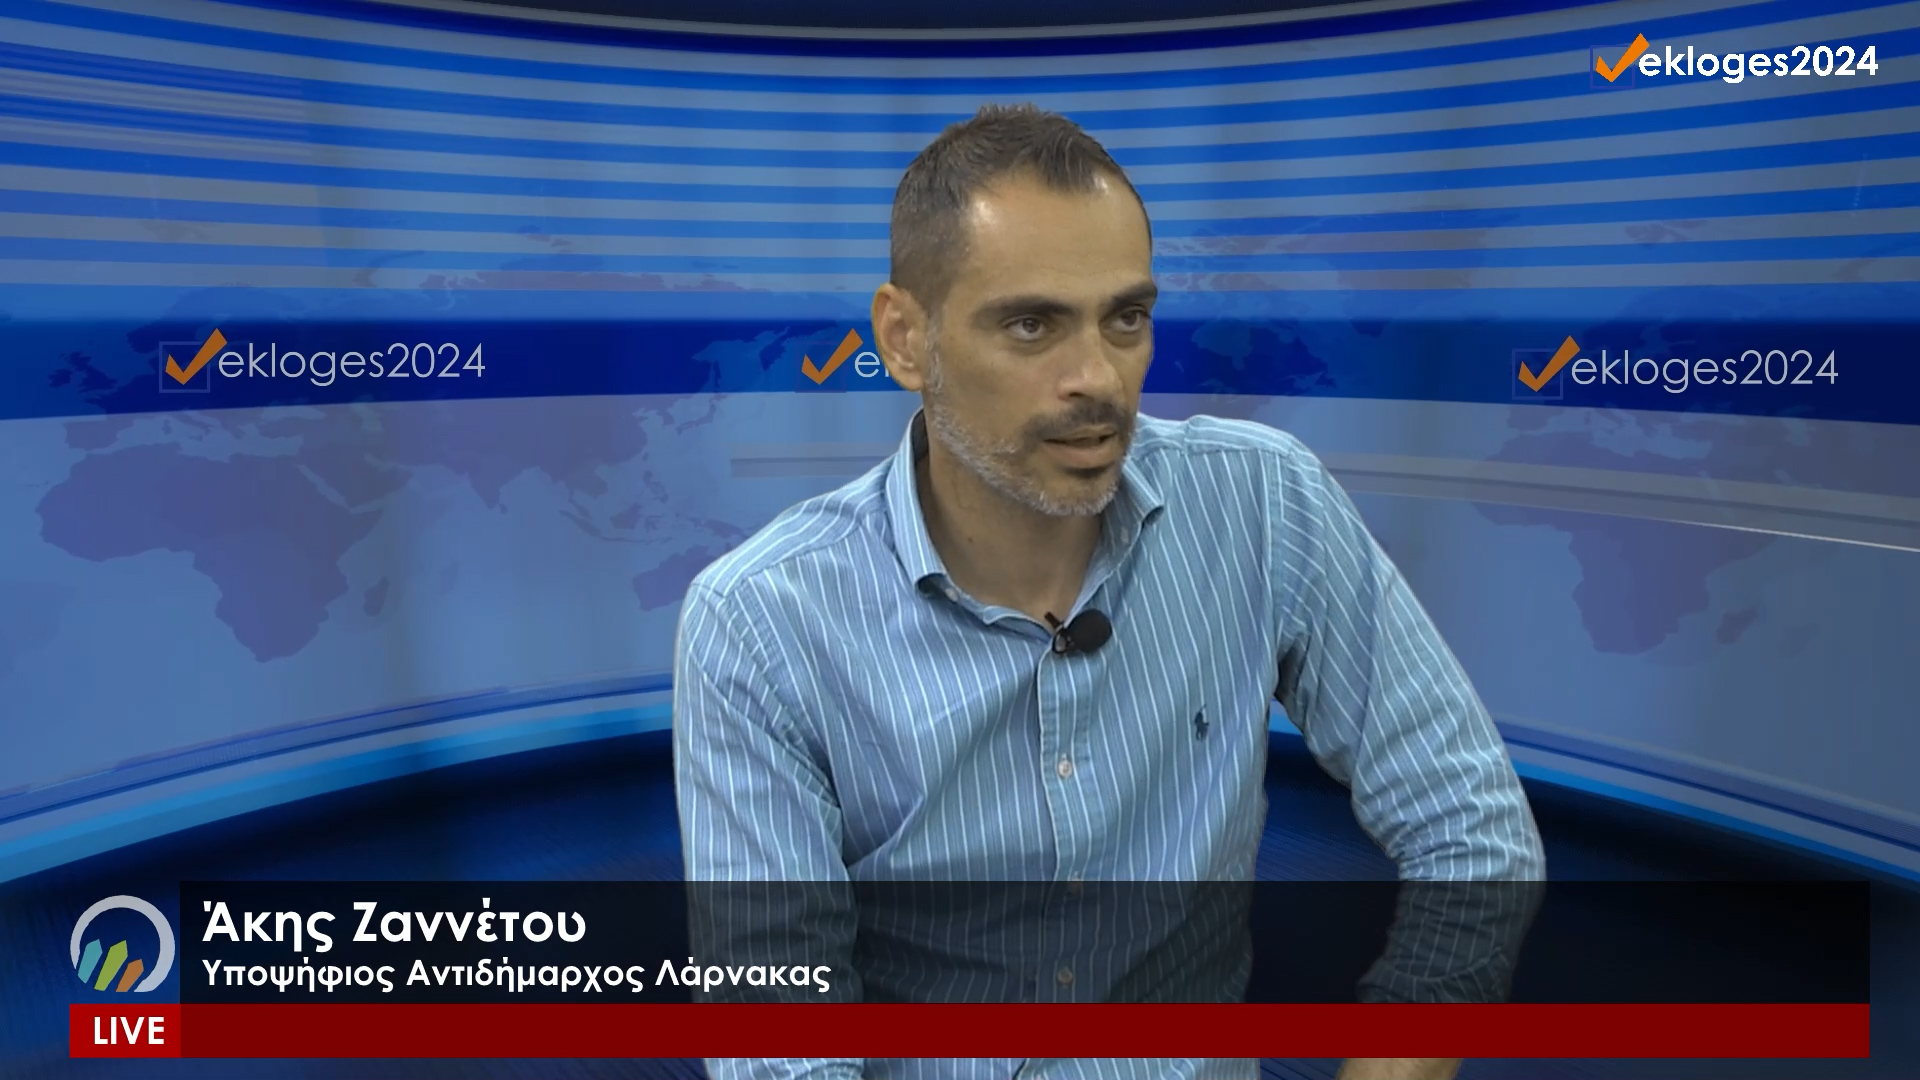 Ο υποψήφιος Αντιδήμαρχος Λάρνακας Άκης Ζαννέττου στο #Εκλογές2024 | Παρασκευή 10/05, 5μμ